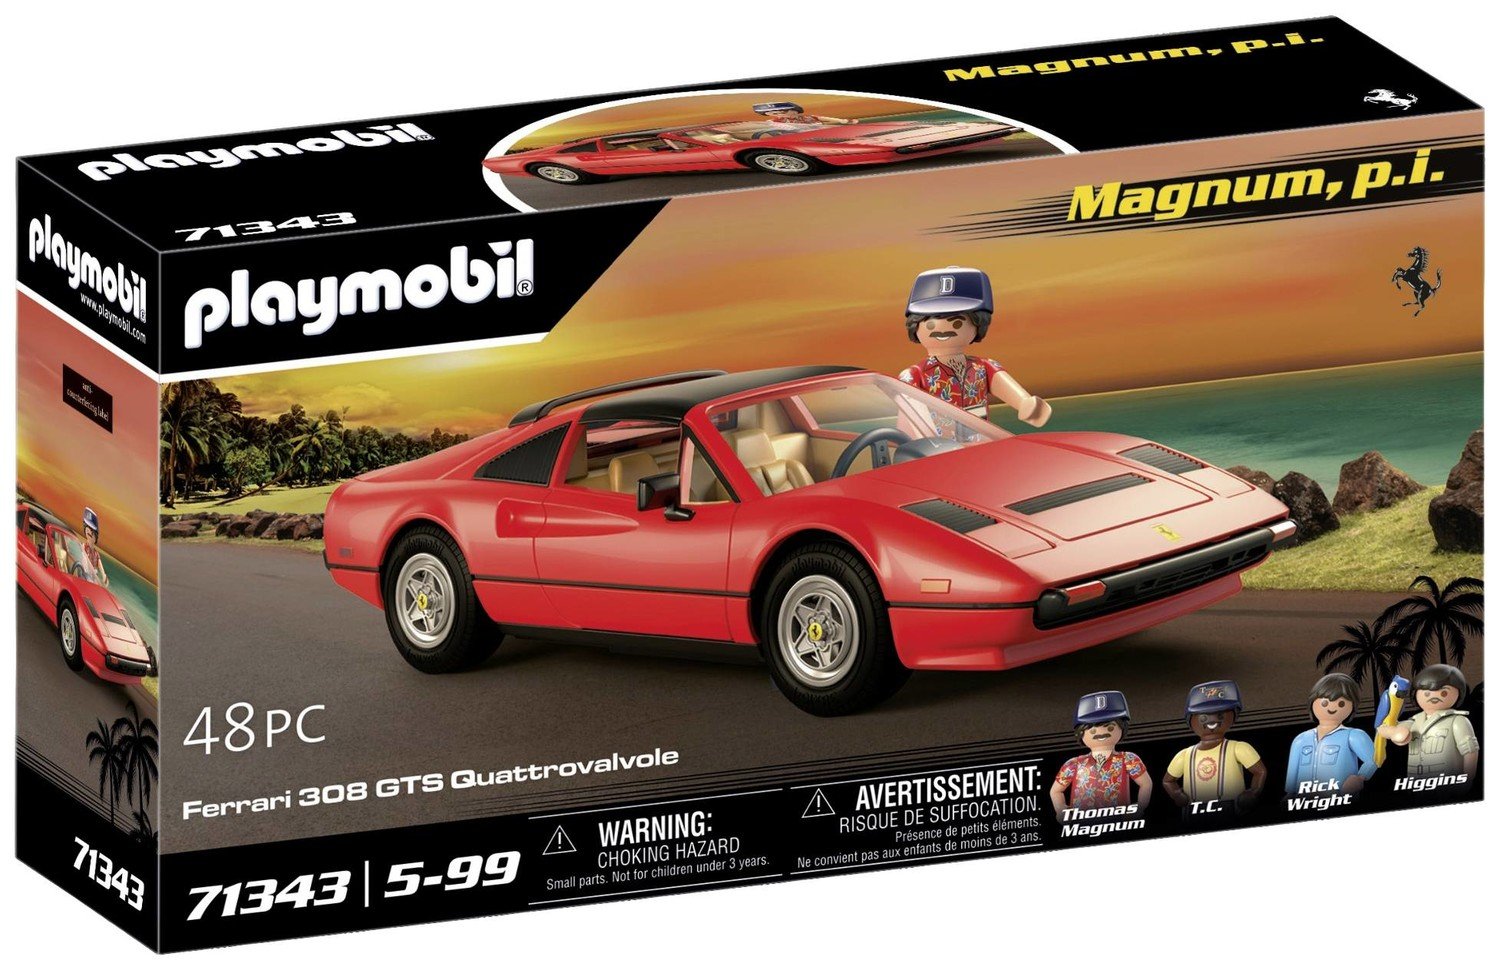 Playmobil® Magnum, p. Ferrari F60 308 GTS Quattrovalvole 71343